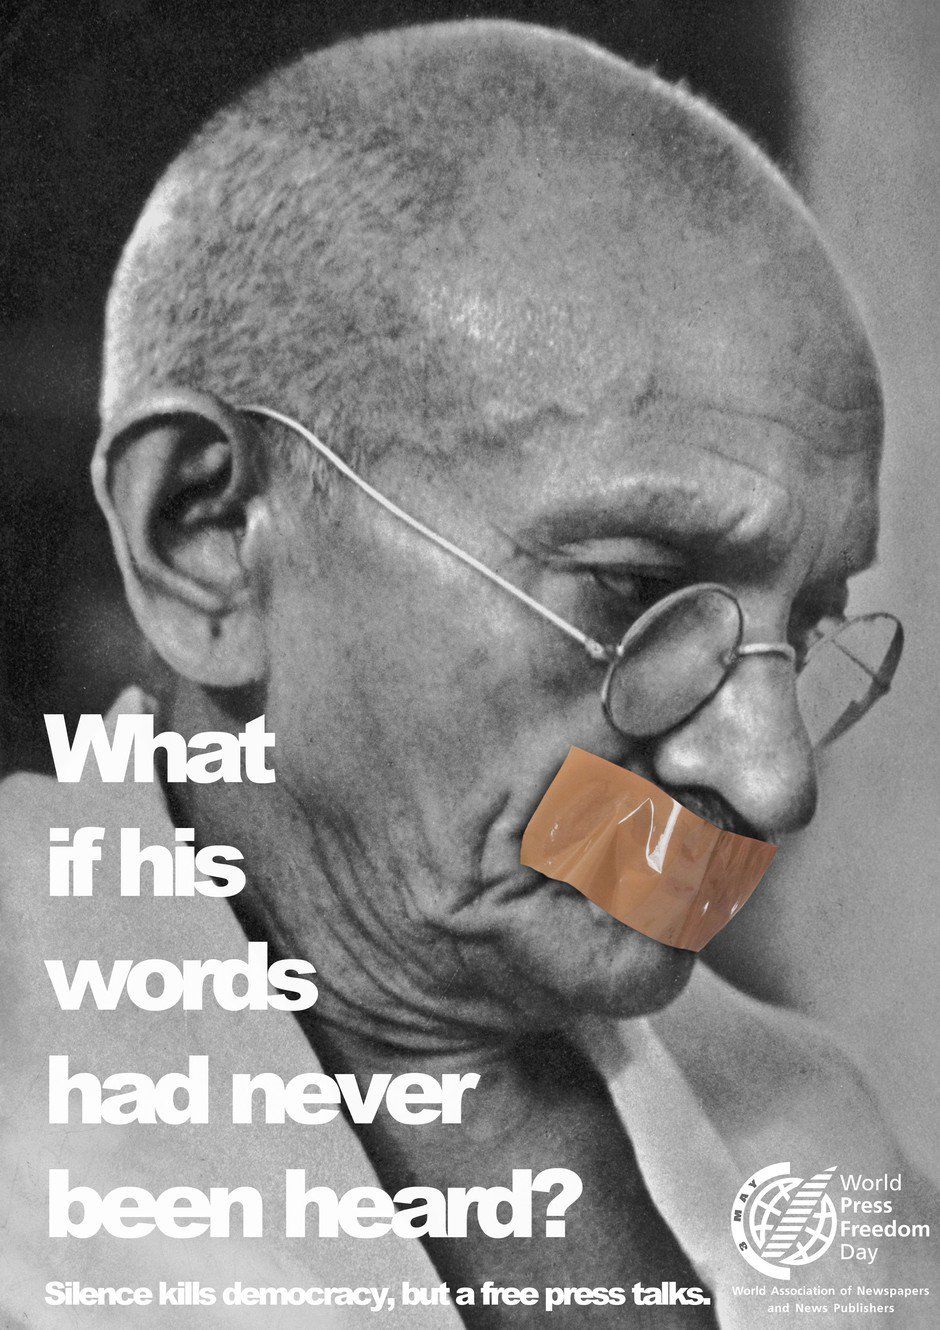 Gandhi's words